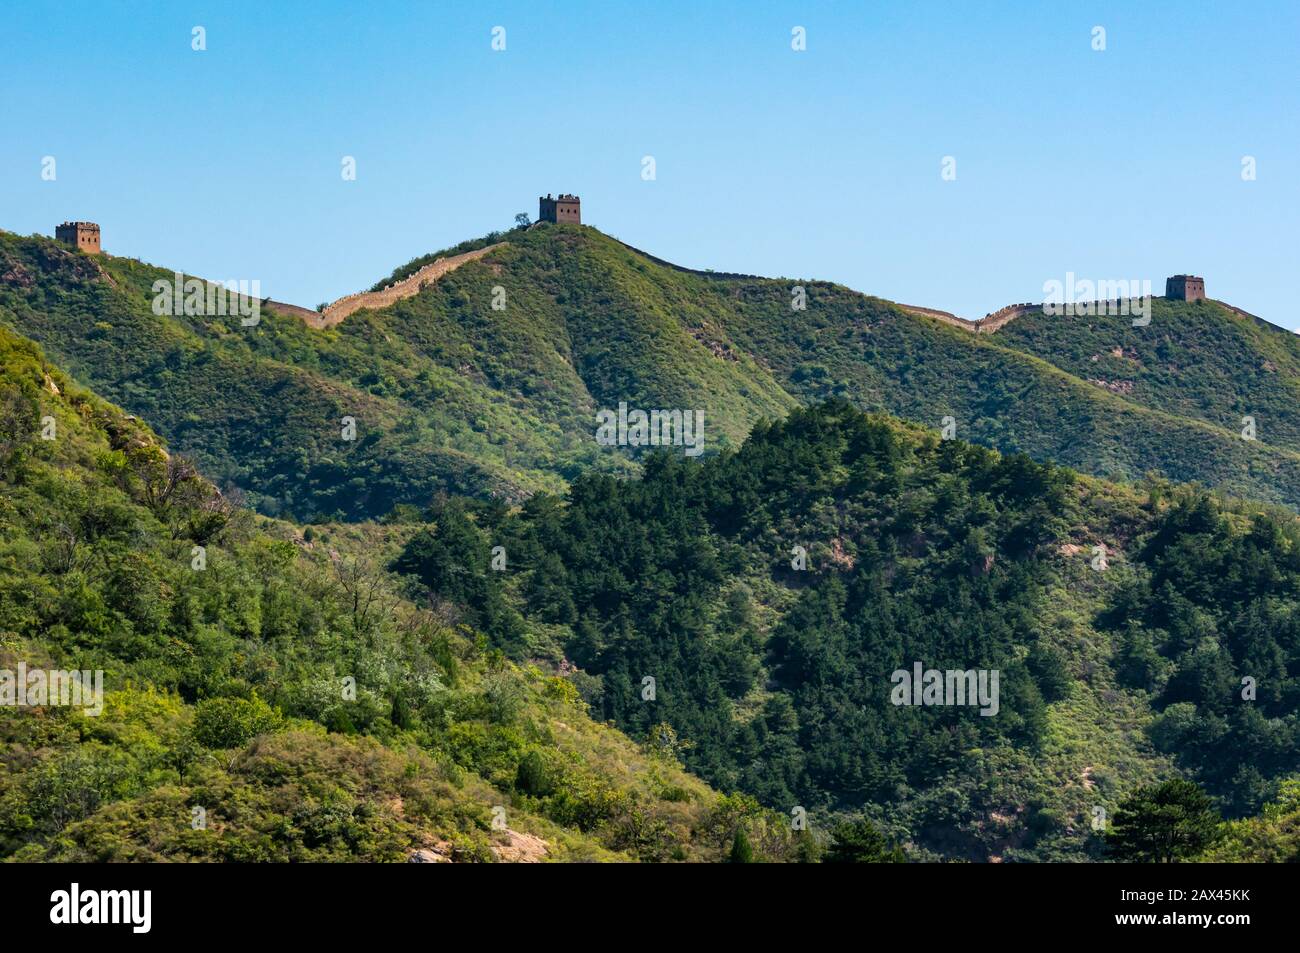 La dynastie Ming Jinshanling Grande Muraille de Chine montre des tours sur la crête de montagne par temps ensoleillé, province de Hebei, Chine, Asie Banque D'Images